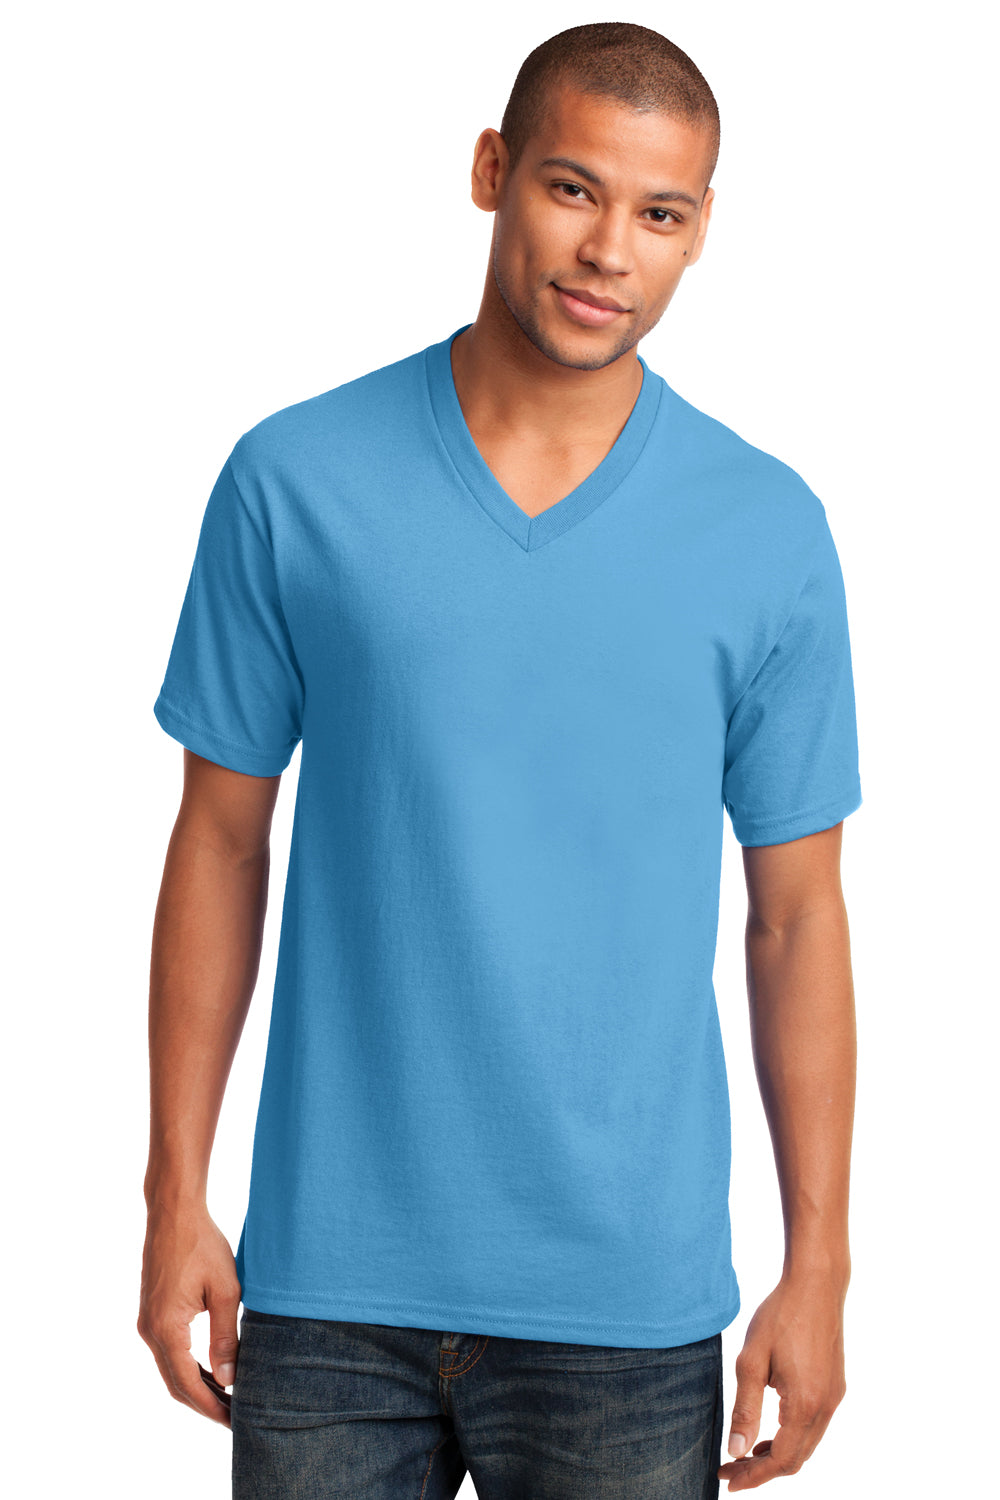 Port & Company PC54V Mens Core Short Sleeve V-Neck T-Shirt Aqua Blue Front